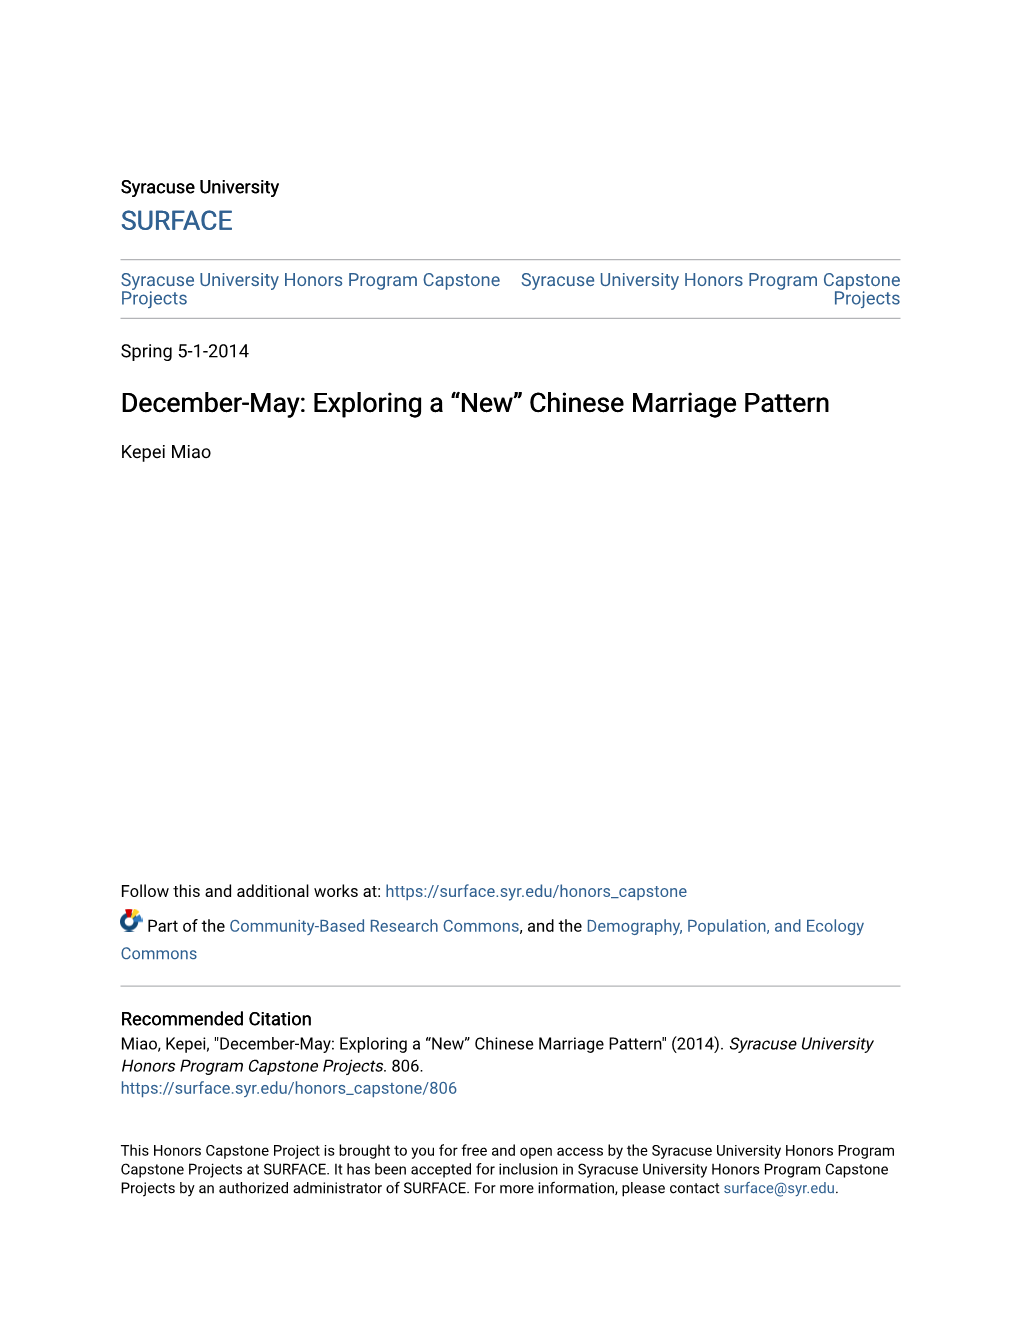 Exploring a Â•Œnewâ•Š Chinese Marriage Pattern